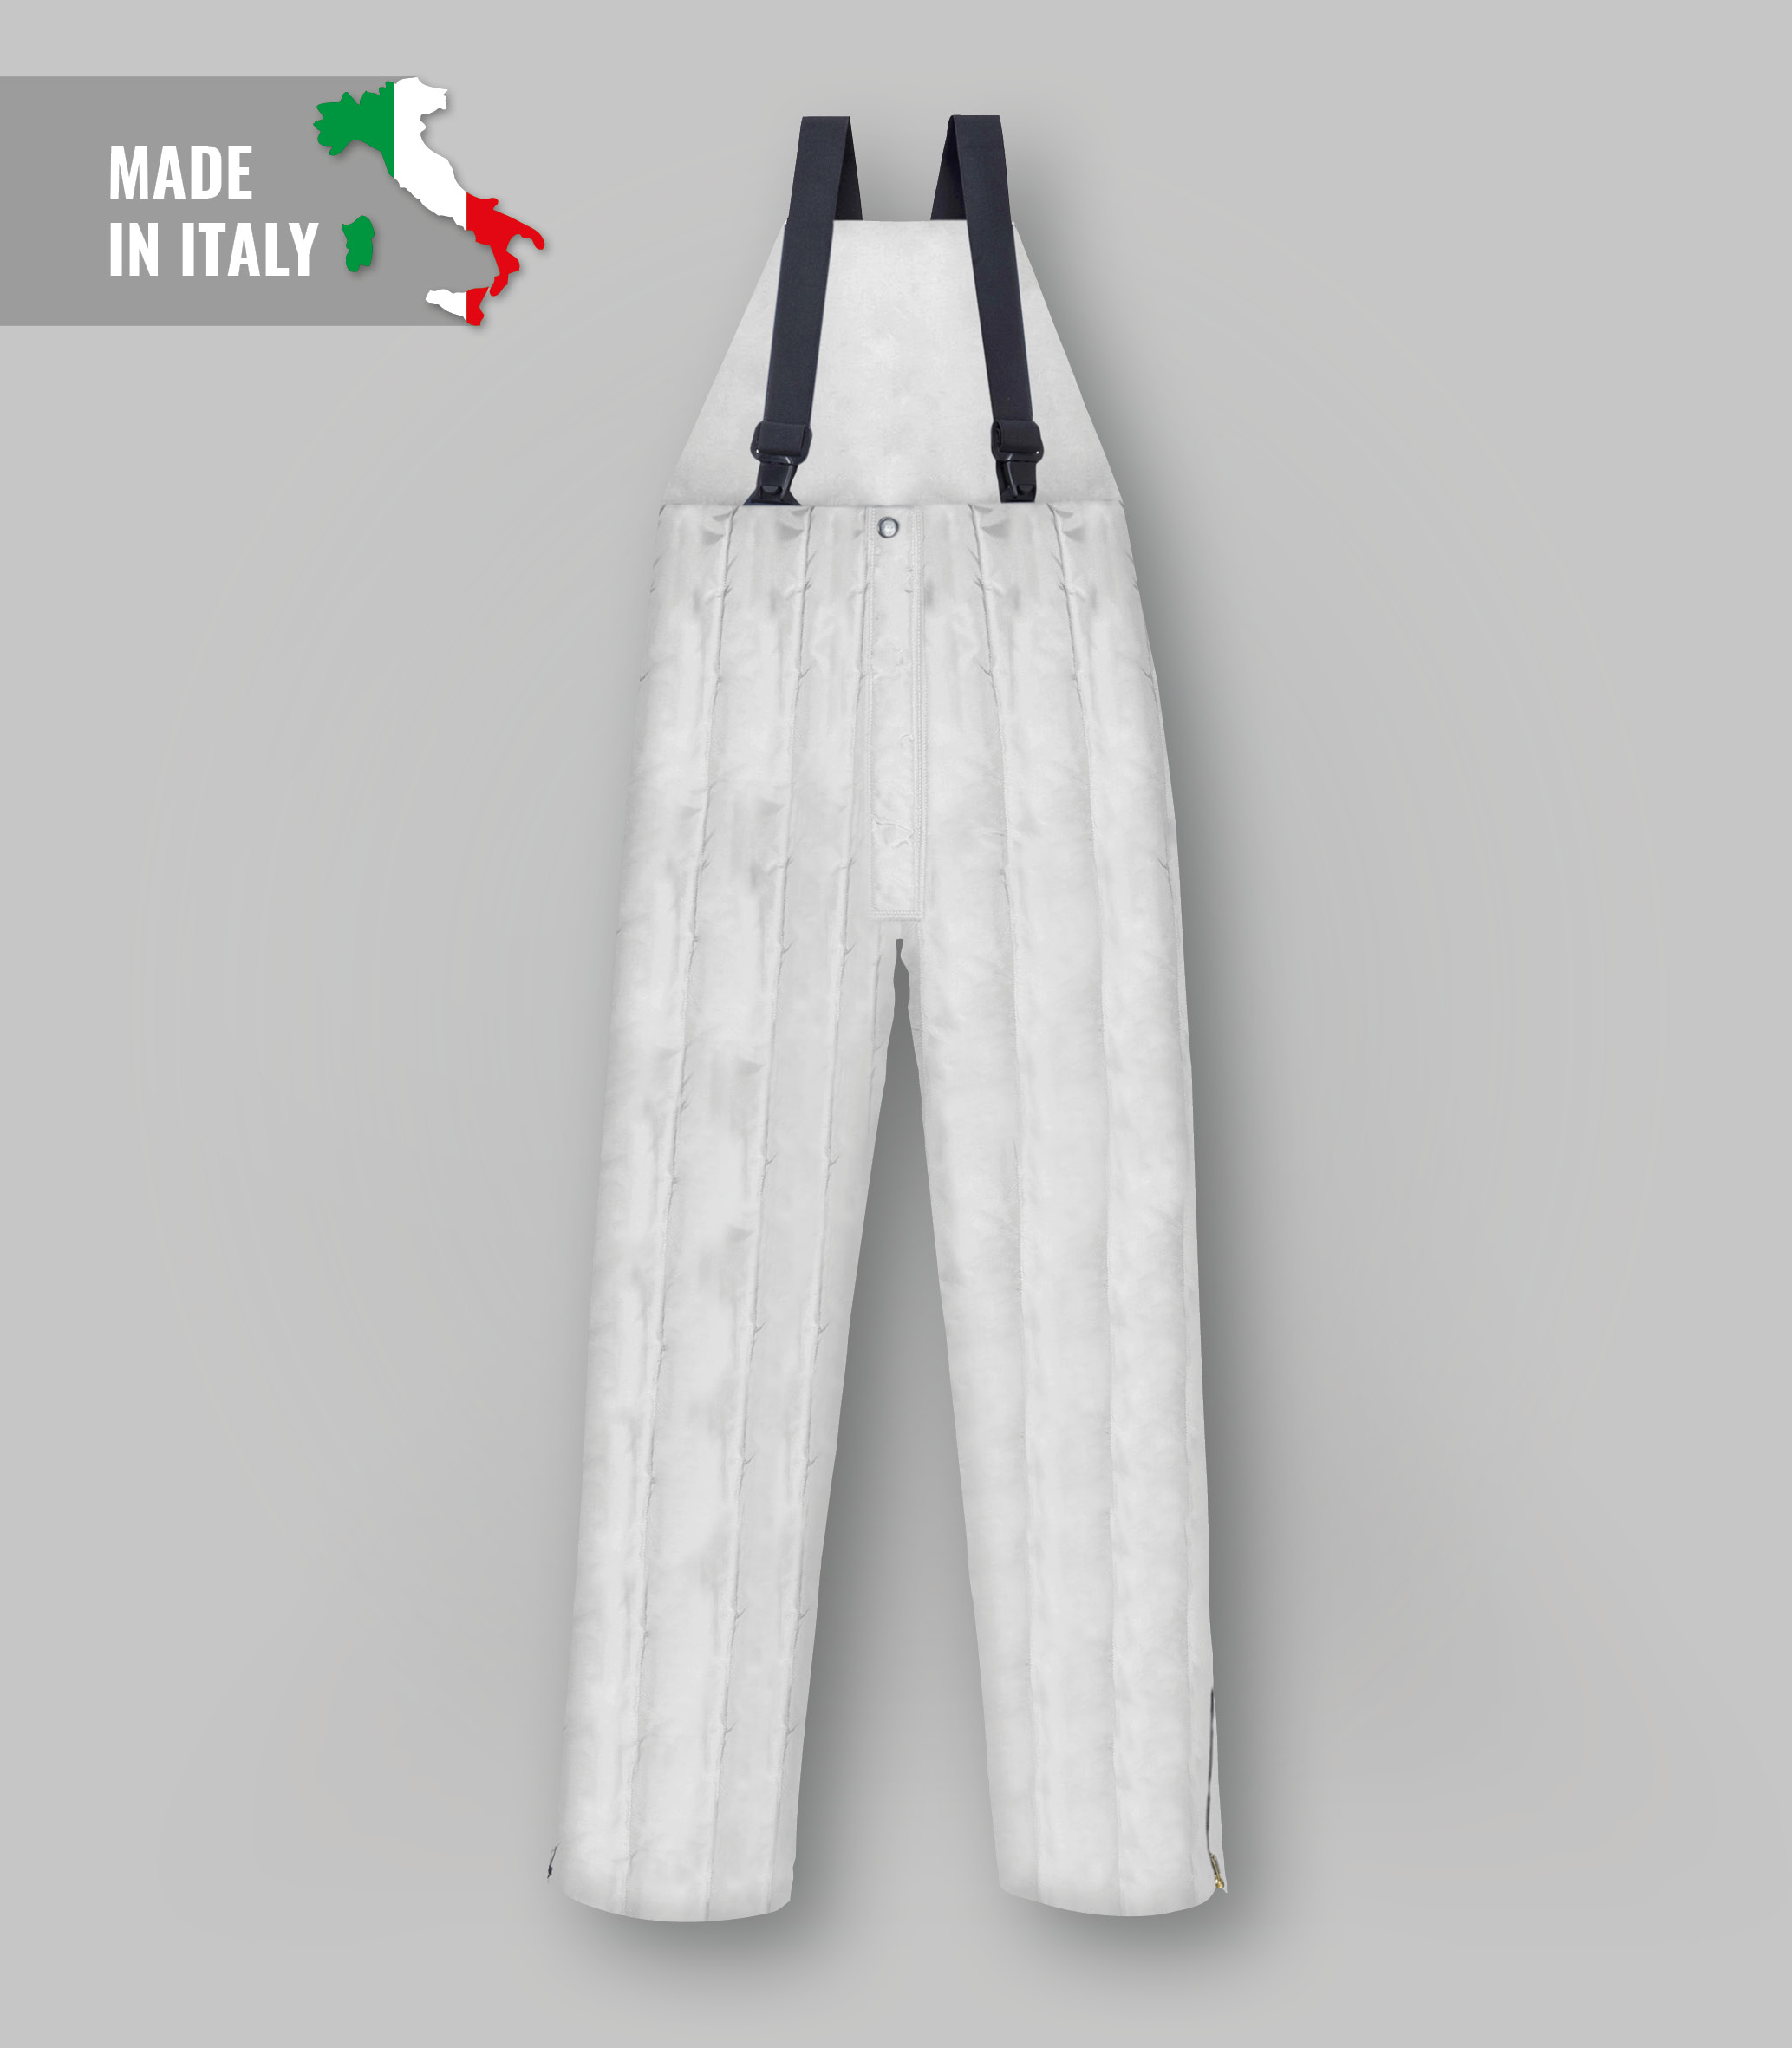 Trousers for cold rooms-abbigliamentocertificato.com